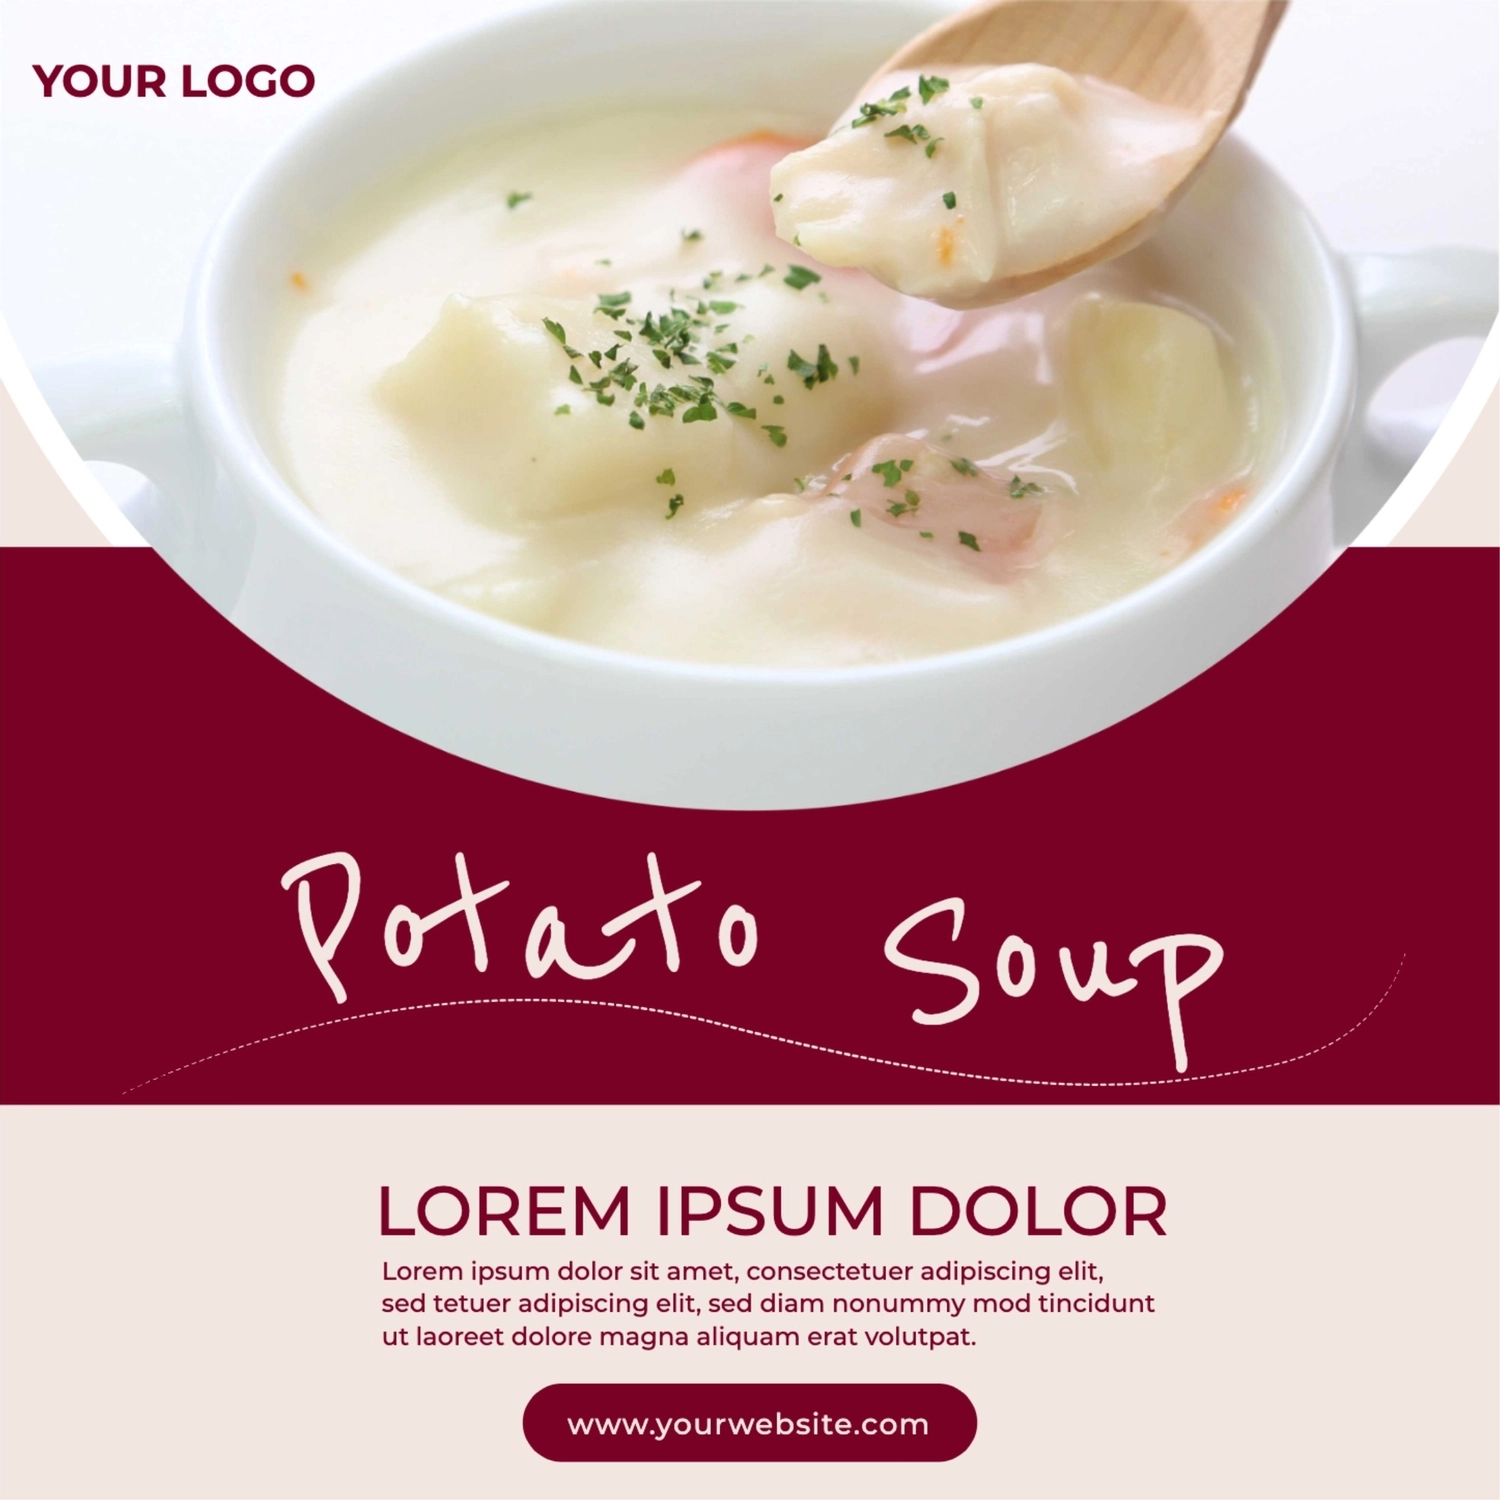 ポテトスープ, 食べ物, カフェ, レストラン, Instagram広告テンプレート